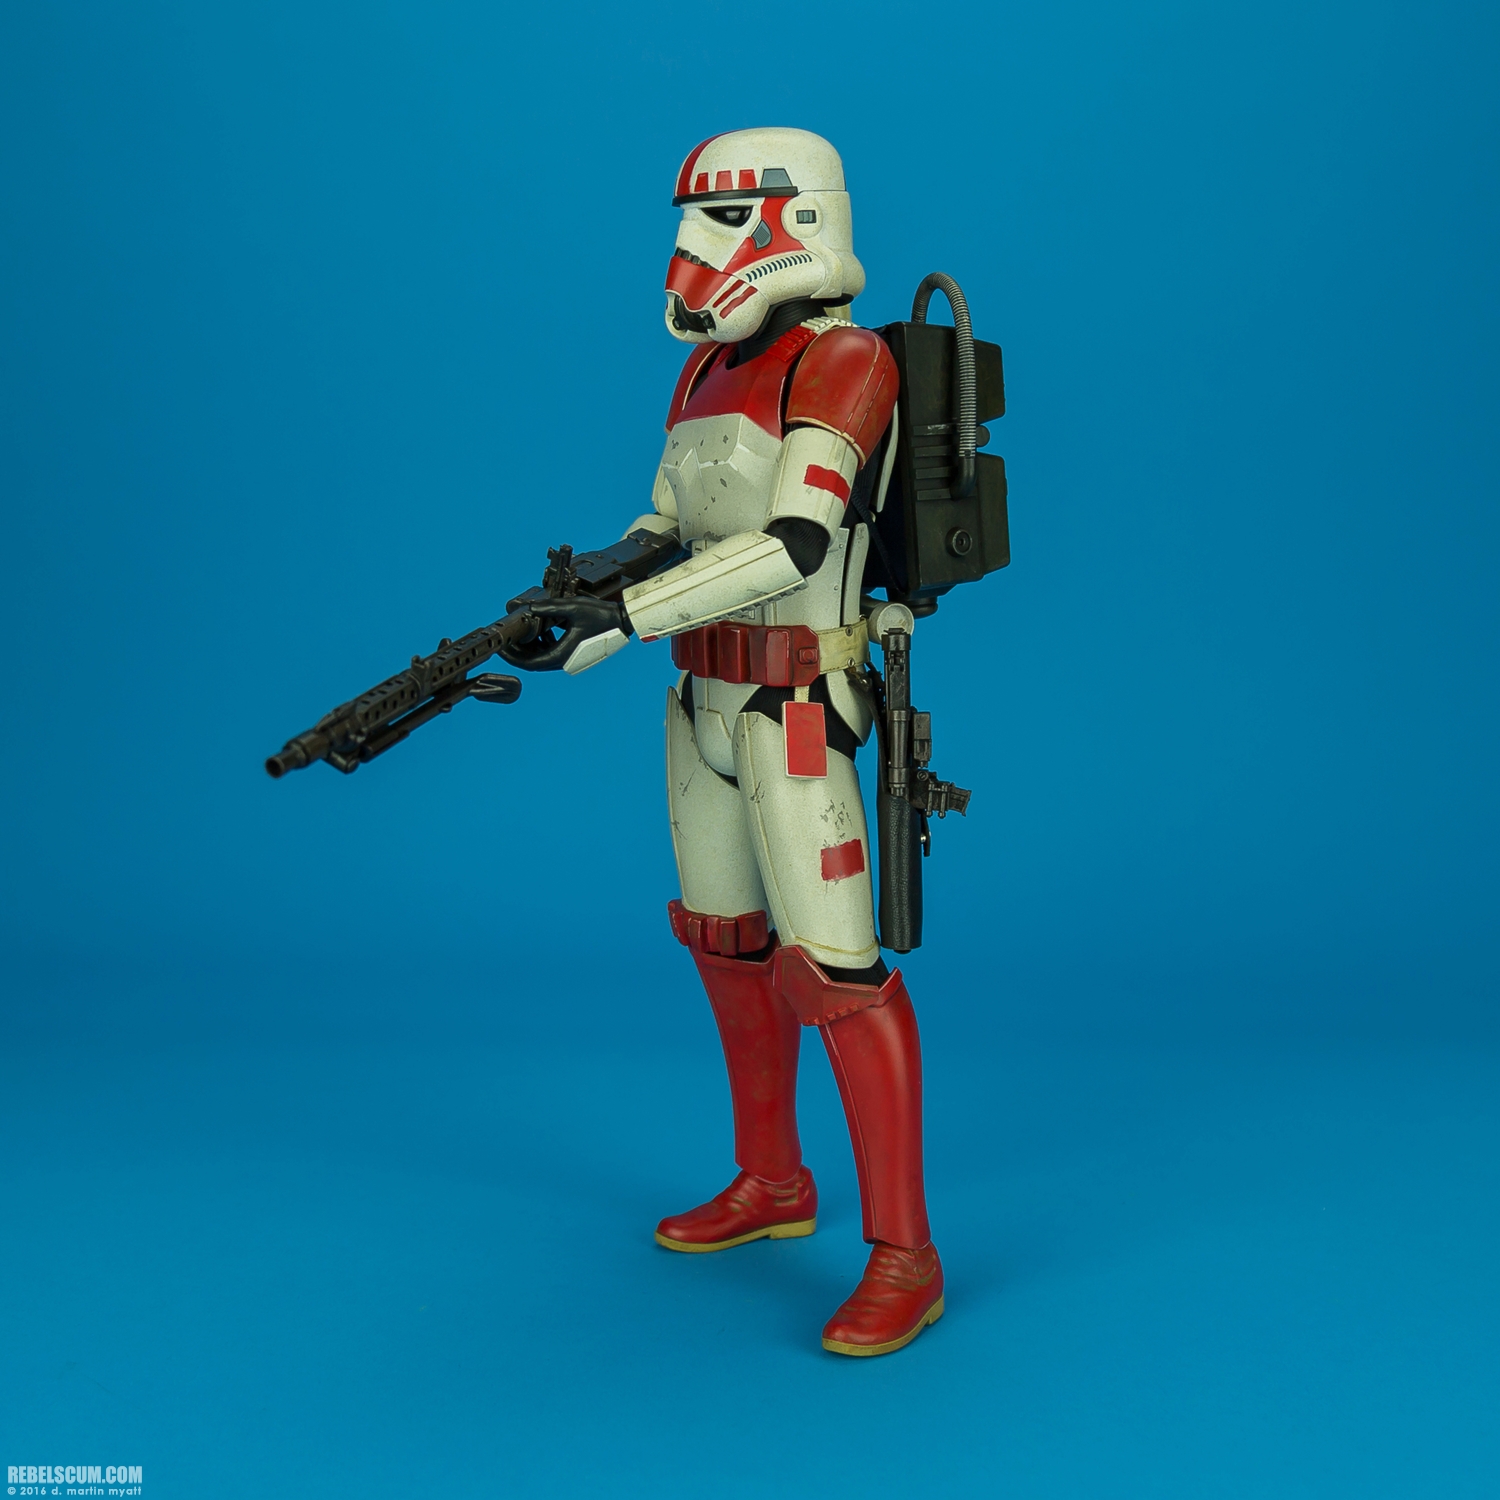 VGM020-Shock-Trooper-Star-Wars-Battlefront-Hot-Toys-007.jpg